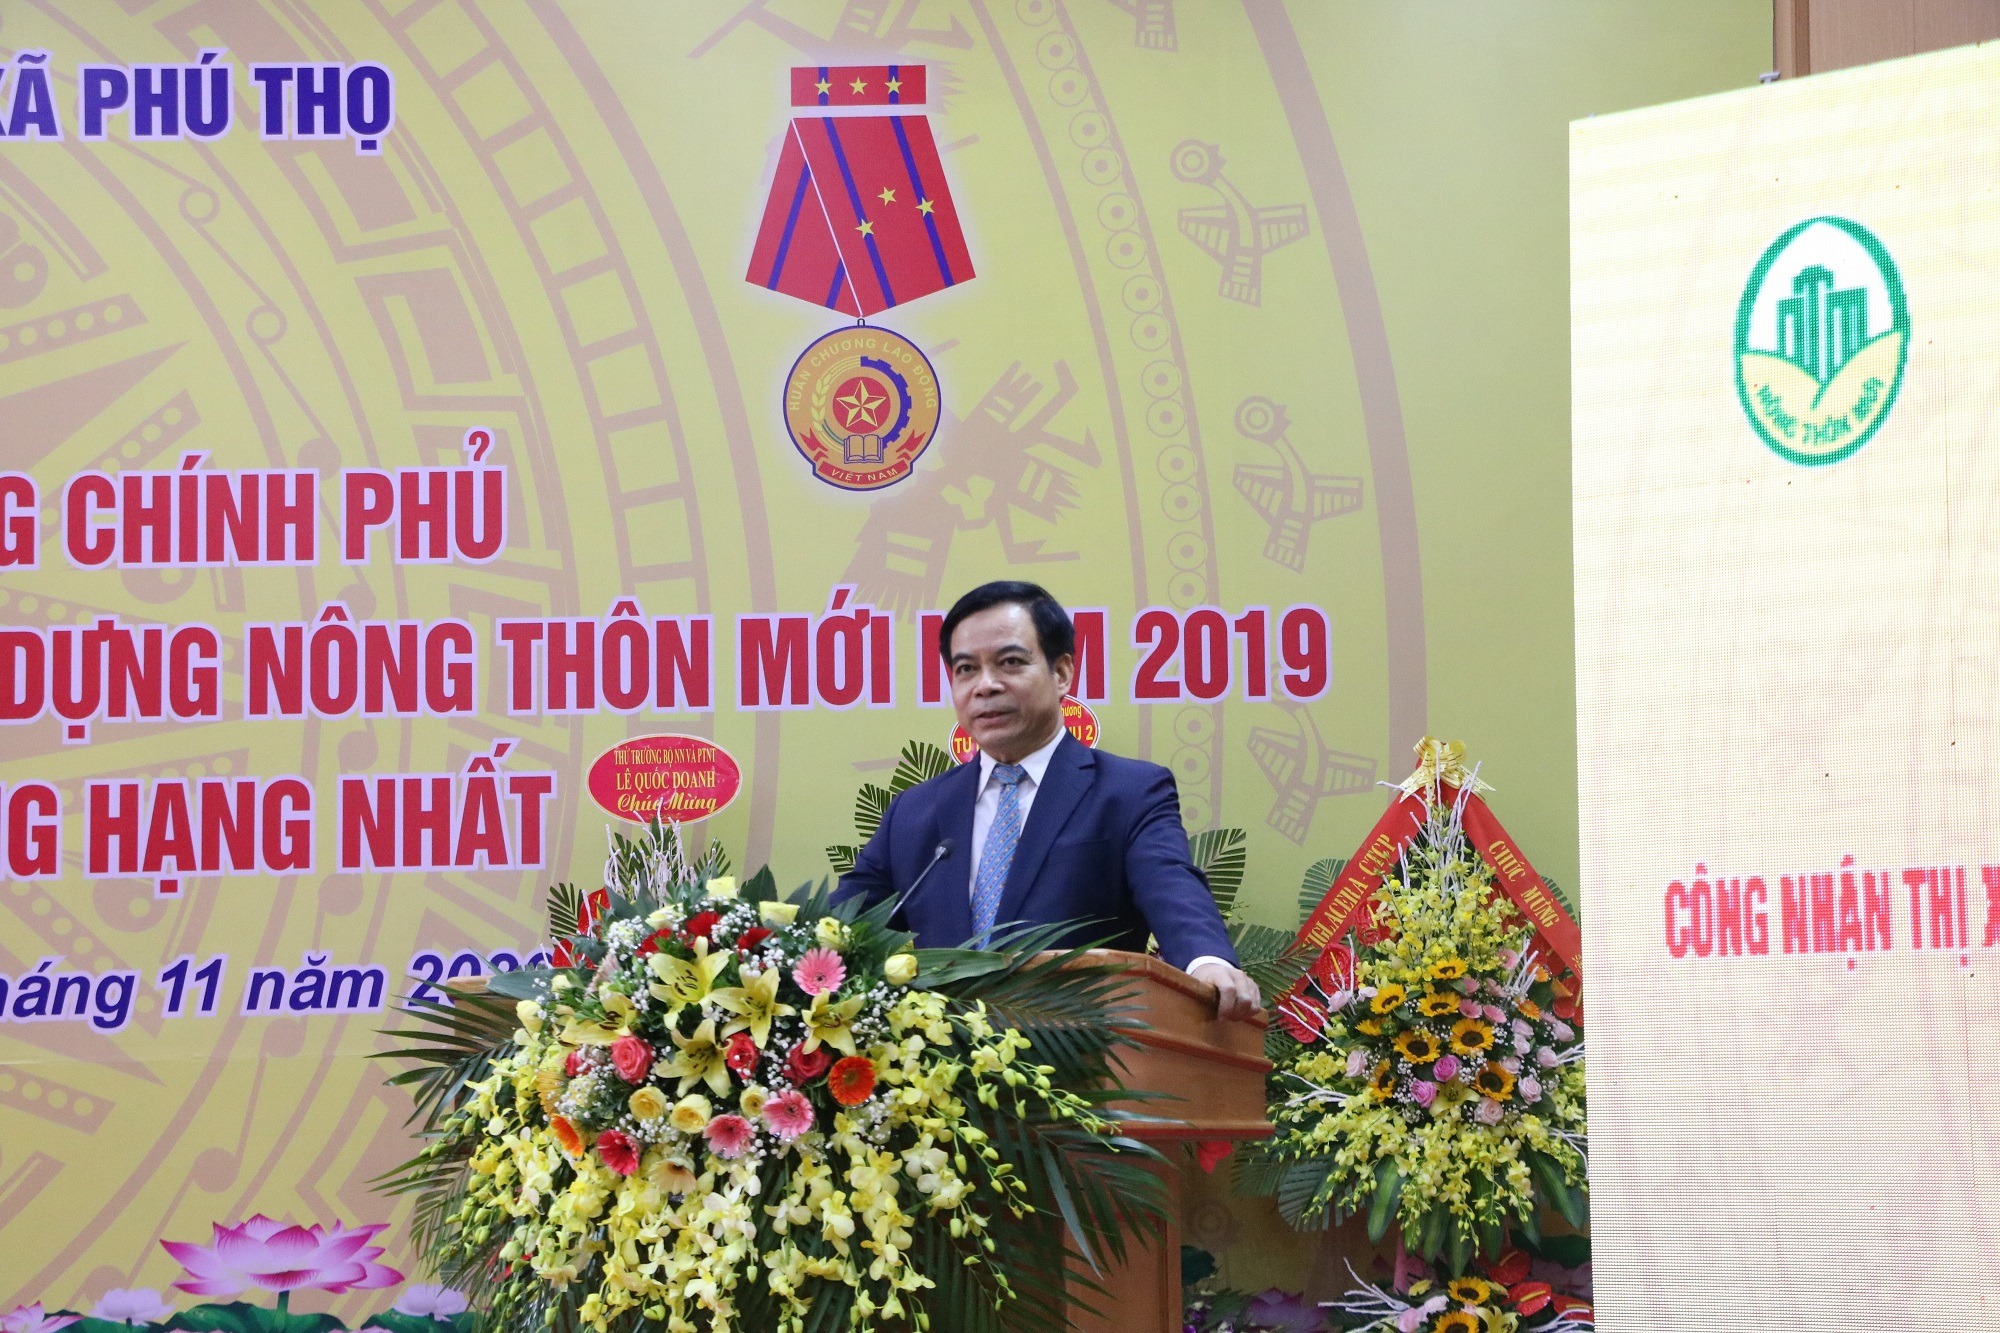 Đồng chí Nguyễn Thanh Hải - Ủy viên BTV tỉnh ủy, Phó Chủ tịch UBND tỉnh phát biểu tại buổi lễ